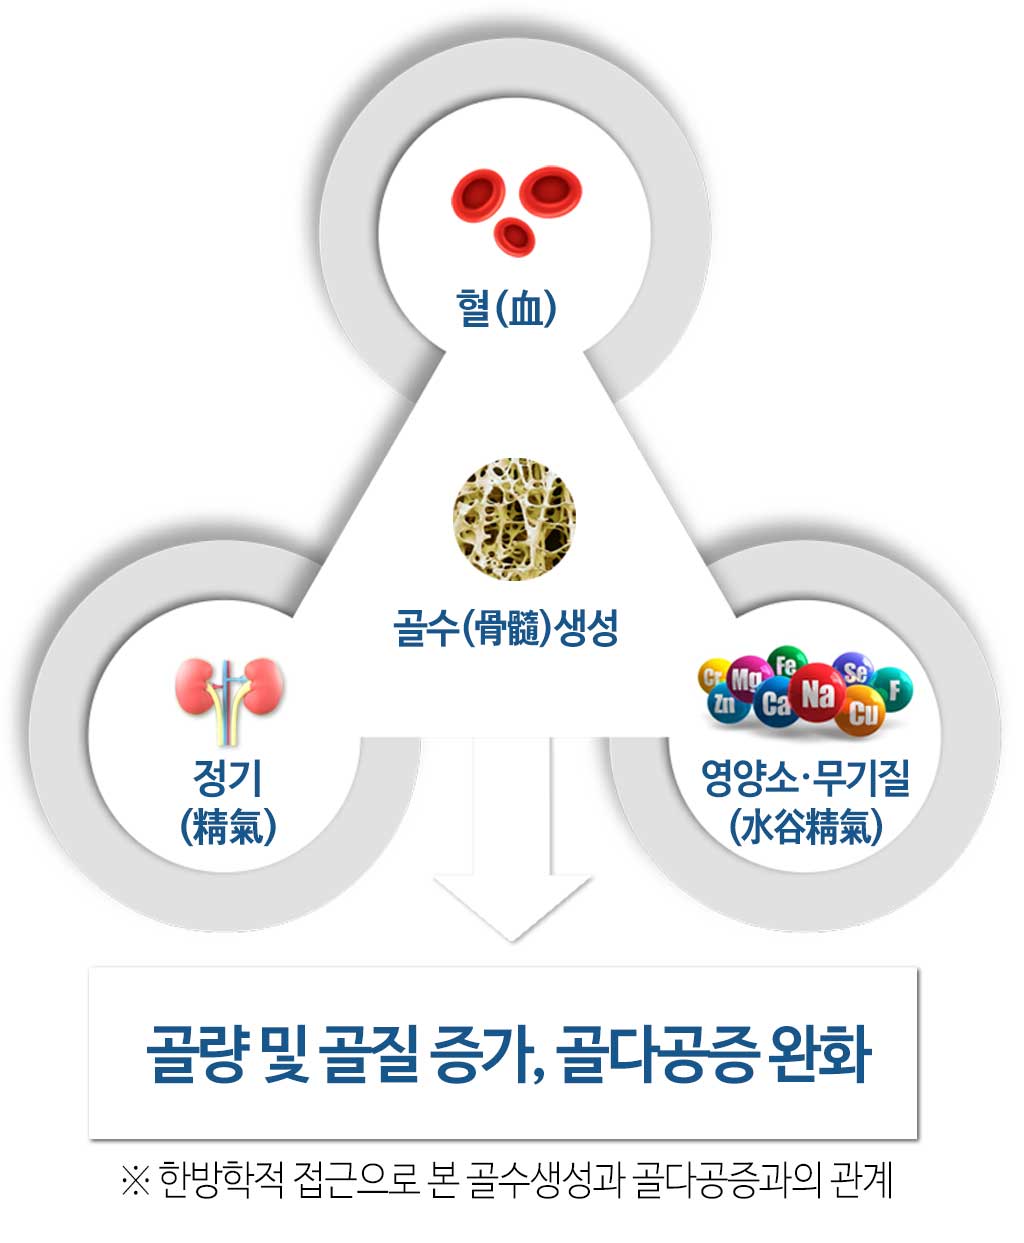 한국한의원, 한국한의원 골다공증 클리닉, 골다공증 클리닉